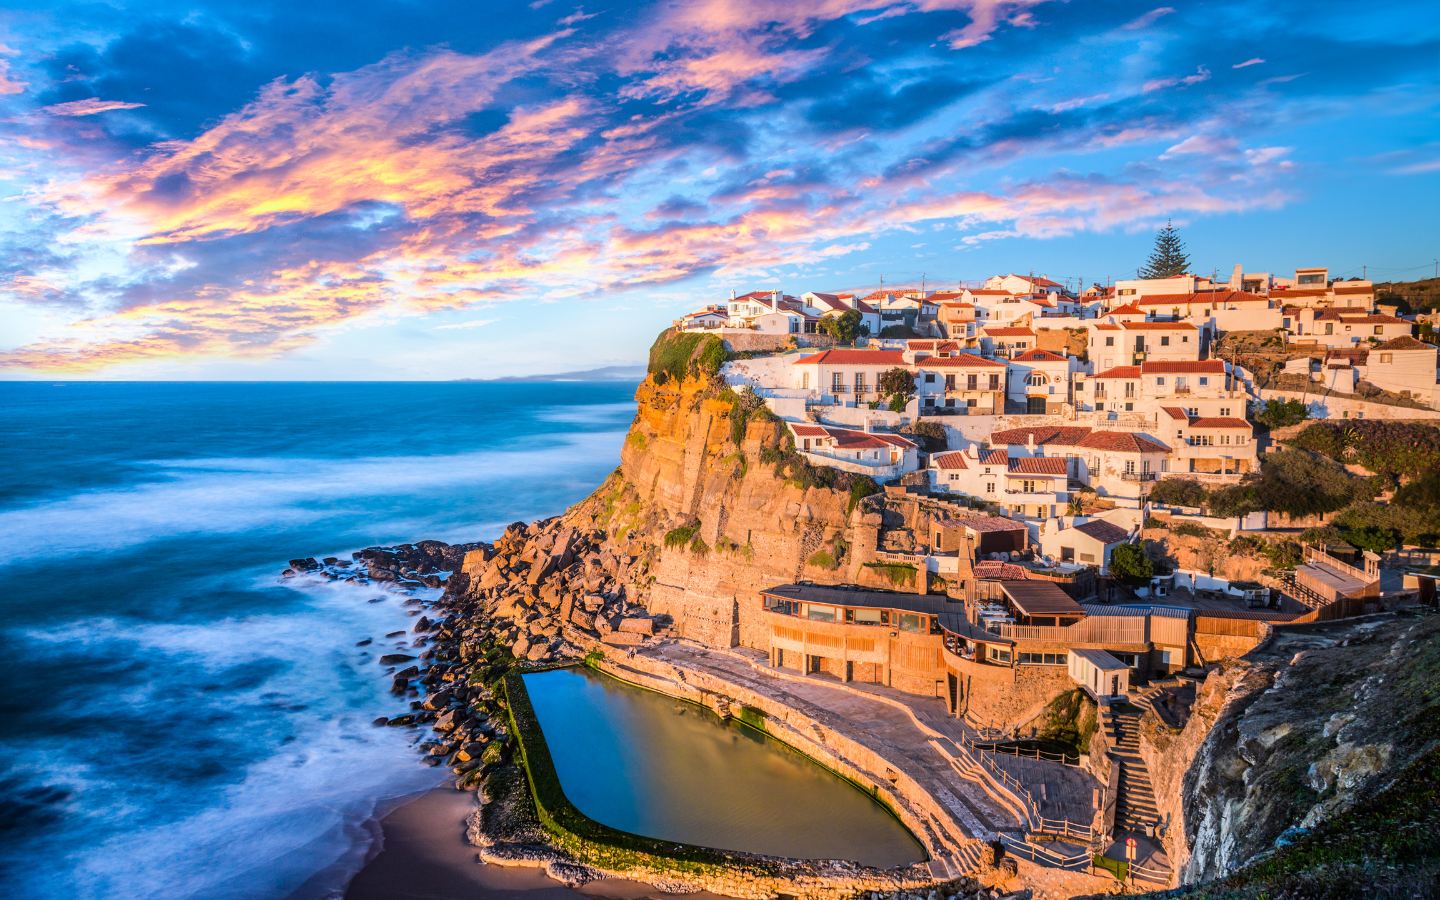 Le Portugal est connu pour sa culture, son histoire, sa gastronomie